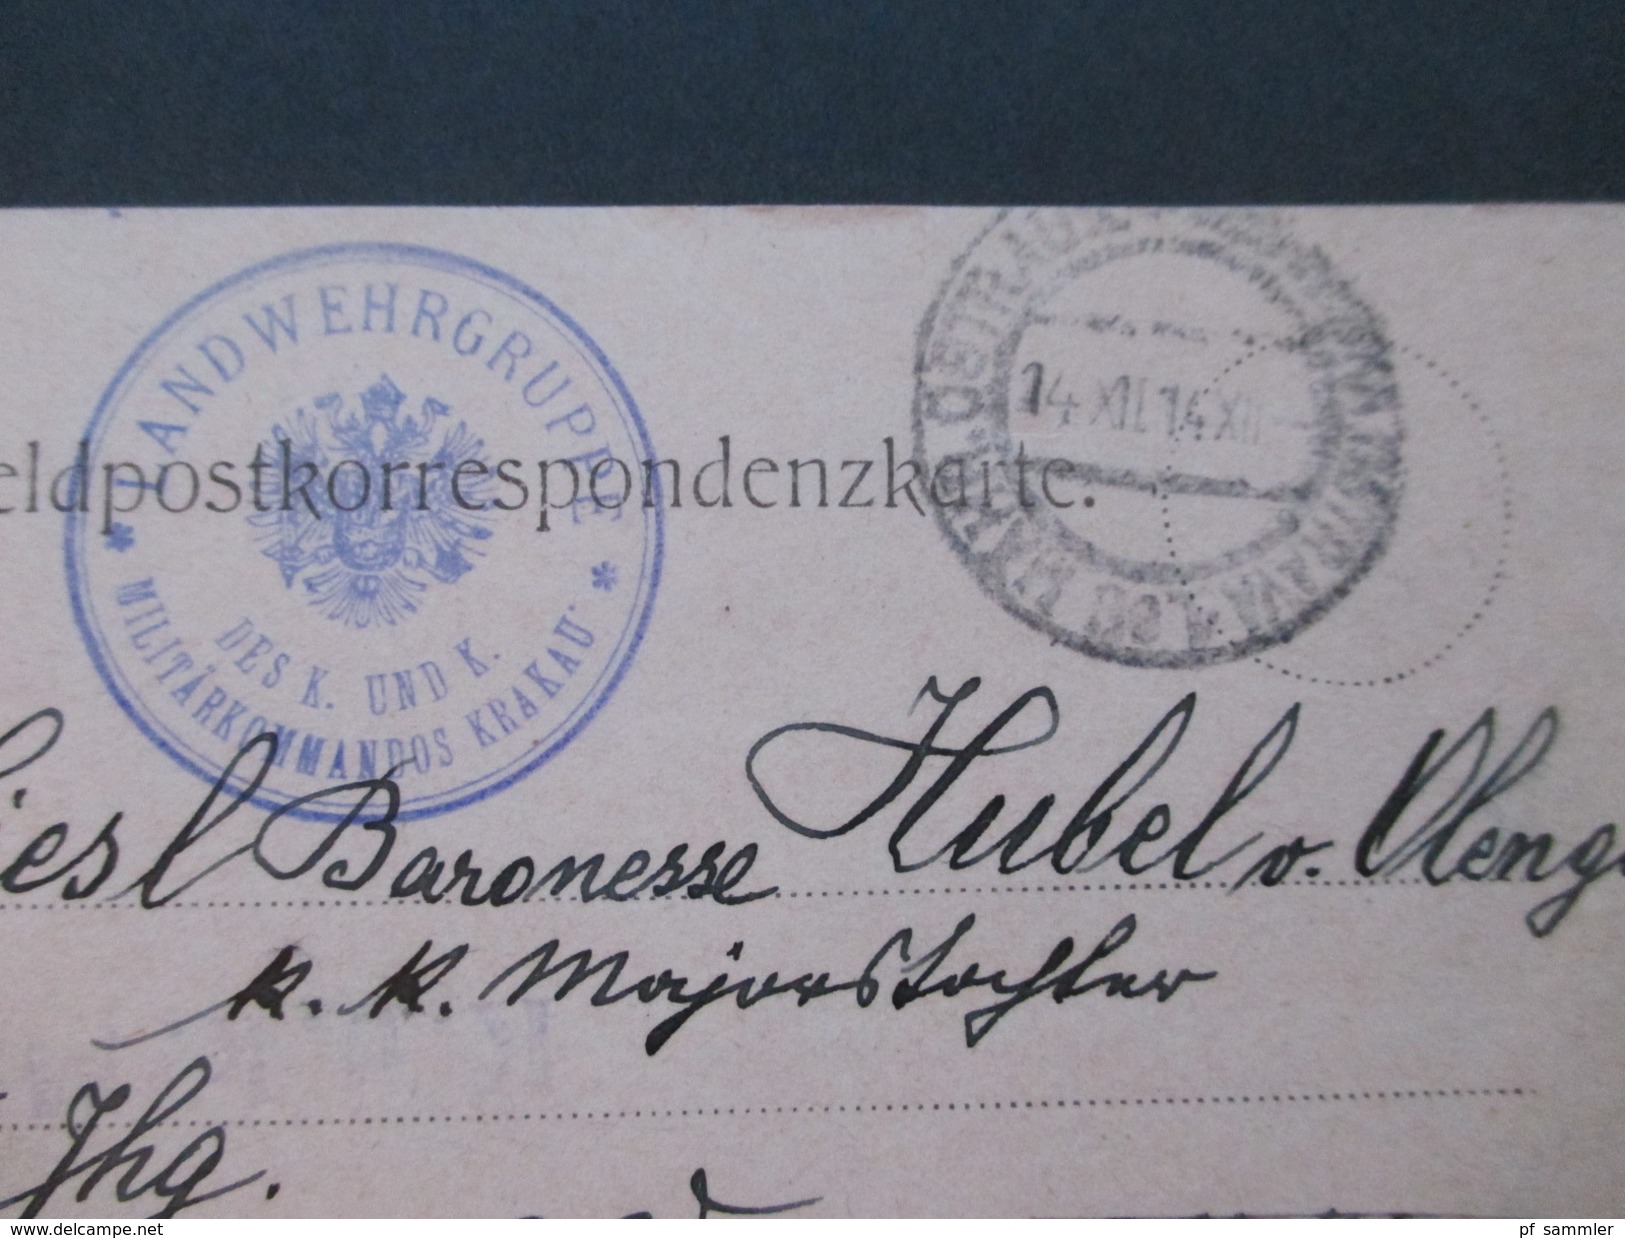 Österreich 1914/15 Felpost Korrespondenz Major Hubel von Olengo. Mährisch Ostrau / Krakau. Baronesse / K.u.K. Offizier